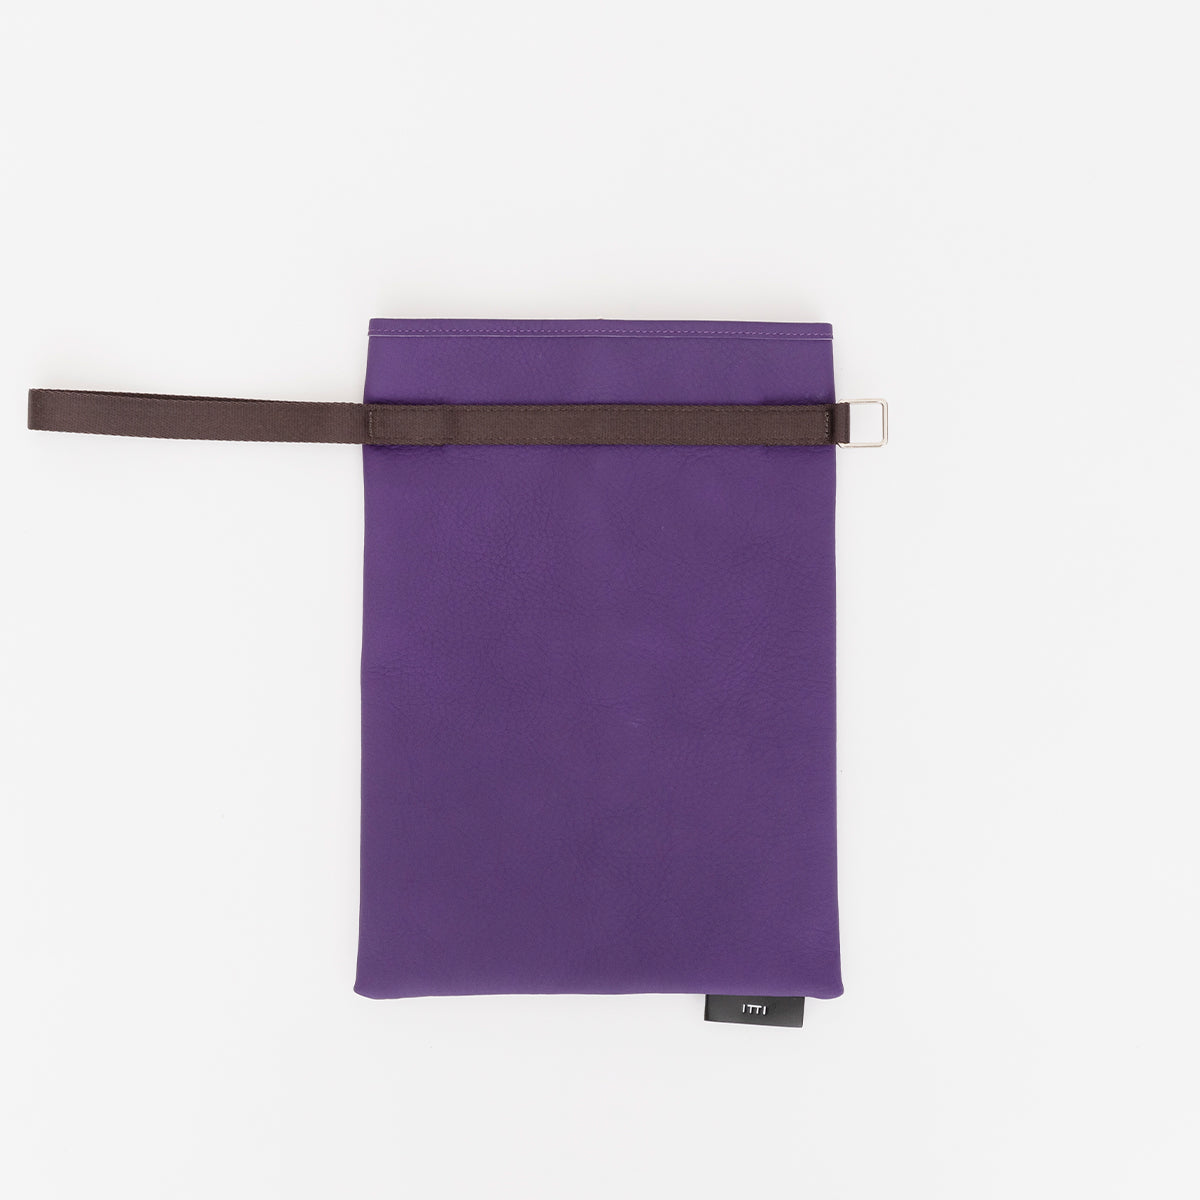 ANNIE RICE BAGiii / PPL COLLECTION【LIMITED】(アニーライスバッグ / パープルコレクション) - ITTI (イッチ) 紫 なす ナス 巾着 ハンドバッグ 鞄 かばん カバン ポーチ レザー 皮革 メンズ レディース ユニセックス